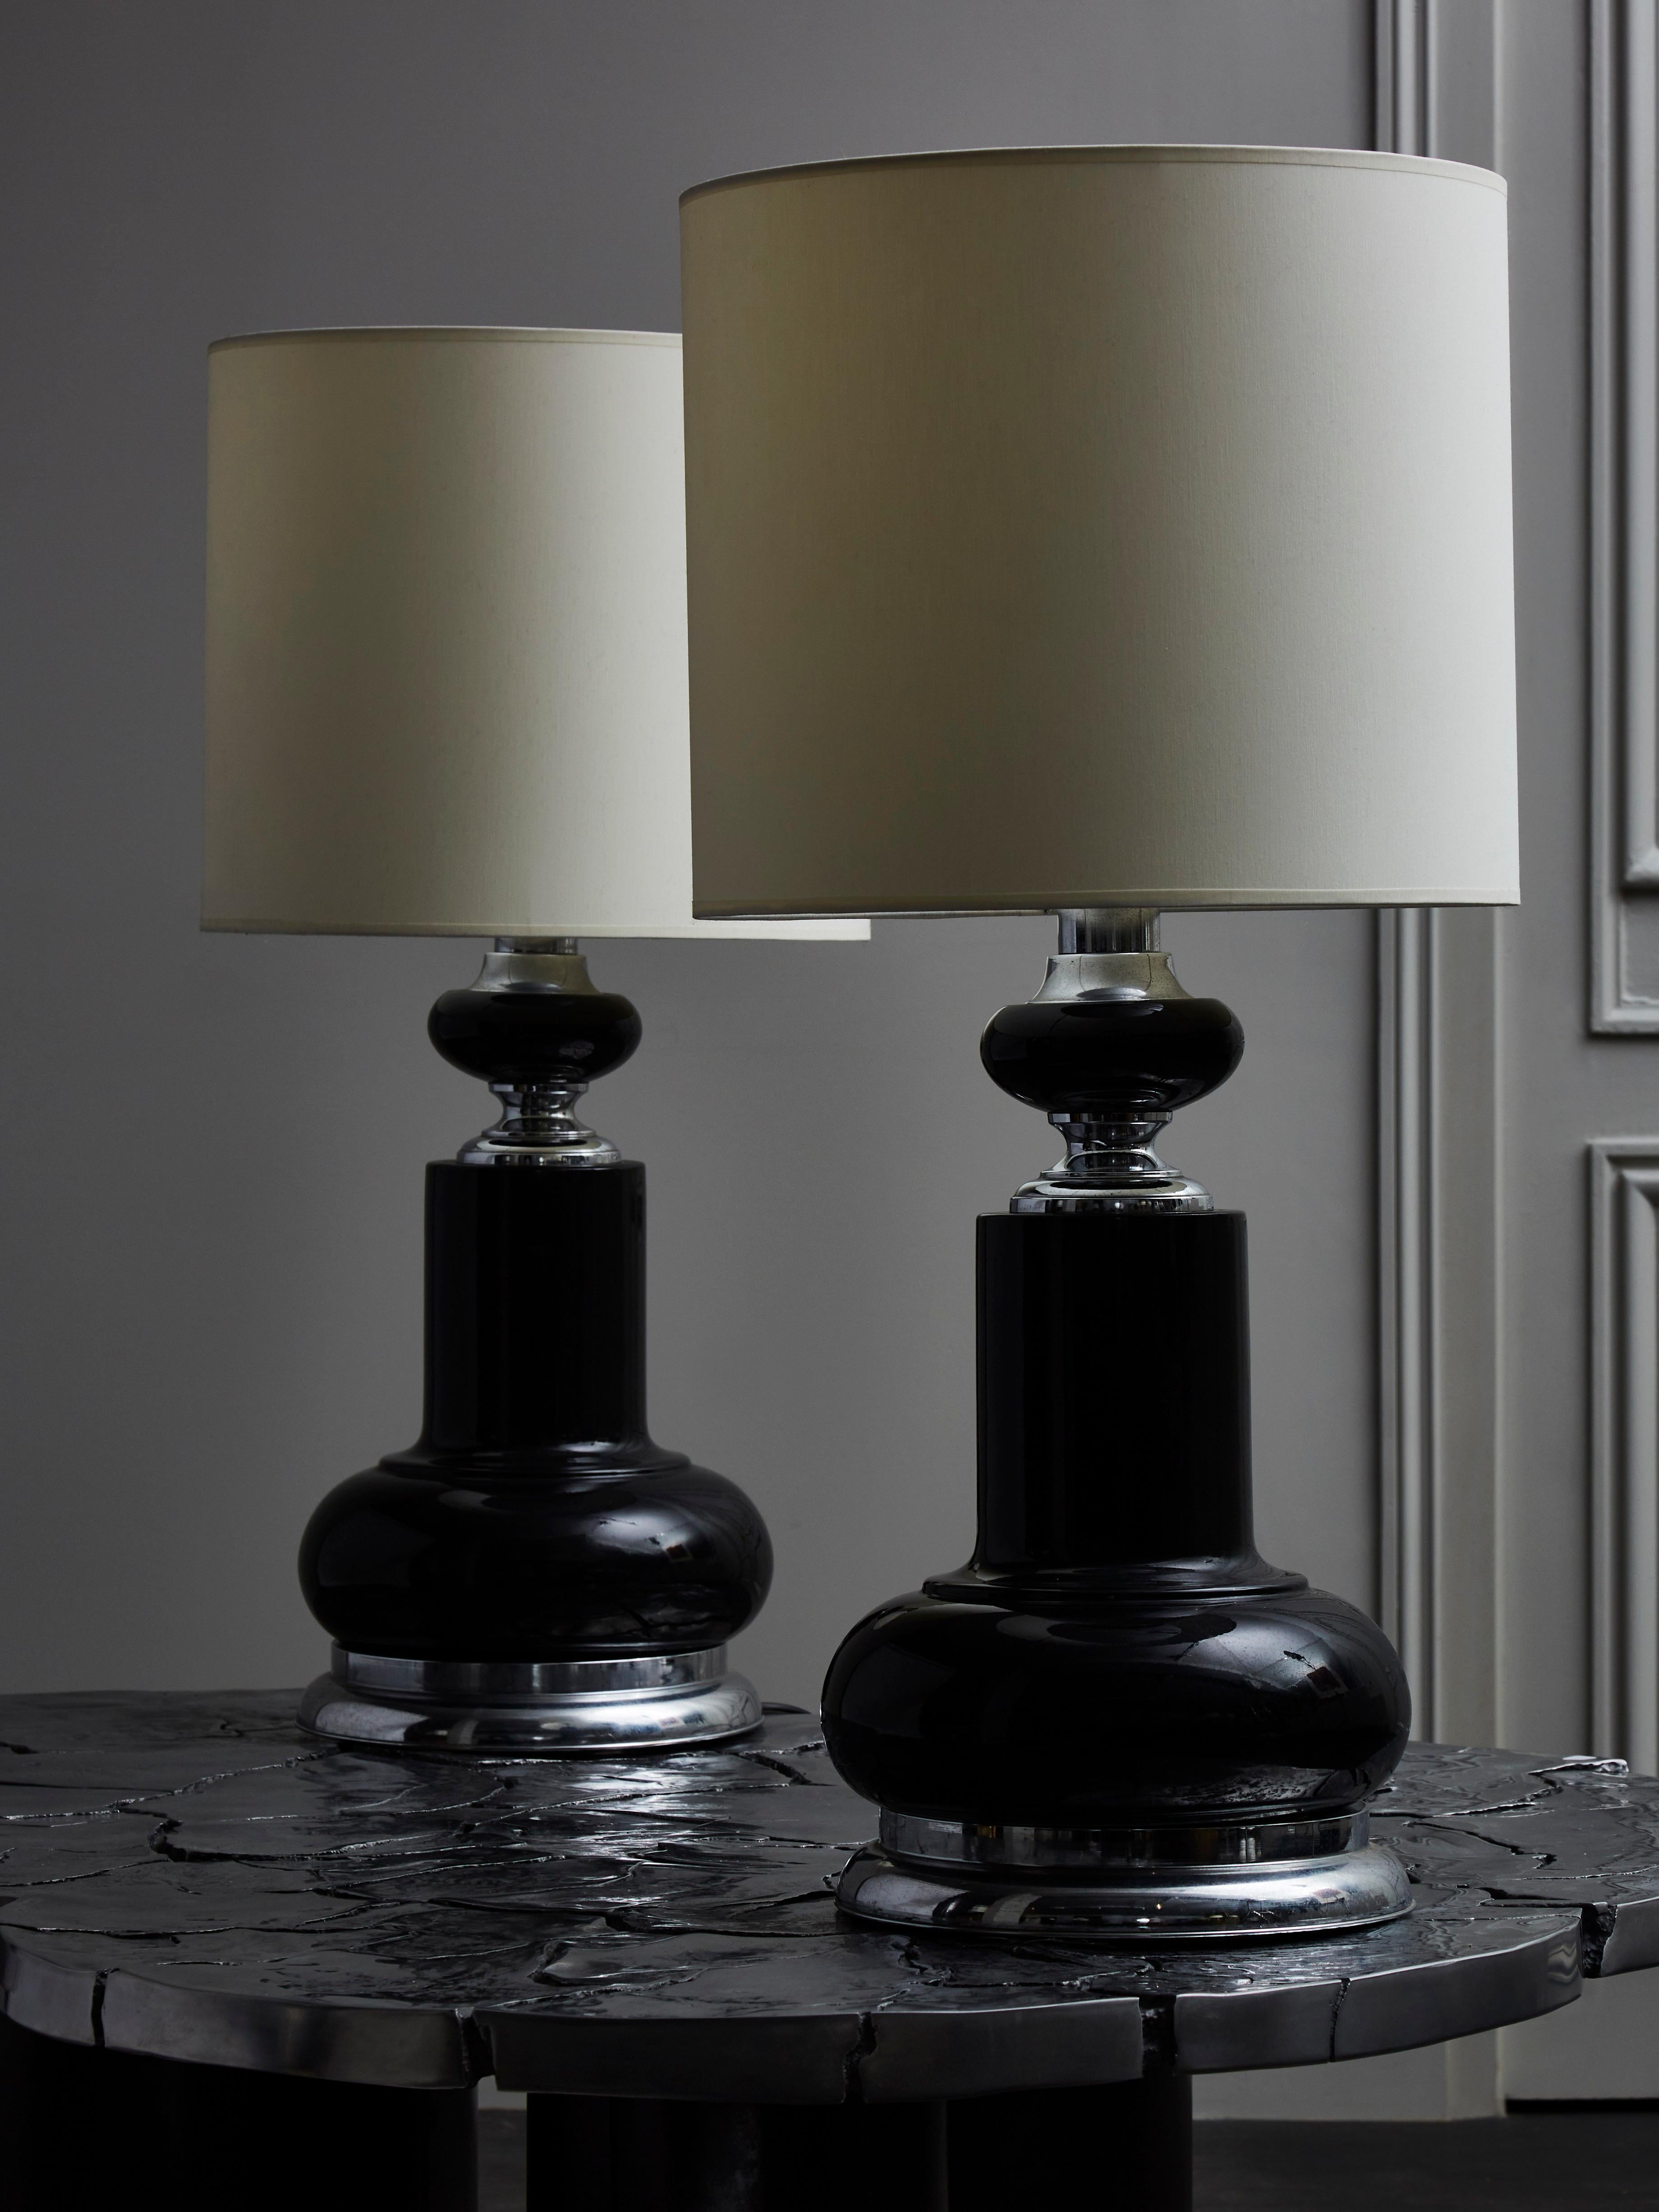 Ein Paar große Tischlampen aus schwarz emailliertem Metall mit polierten Details wie den Füßen und Hälsen der Lampen.
 
  